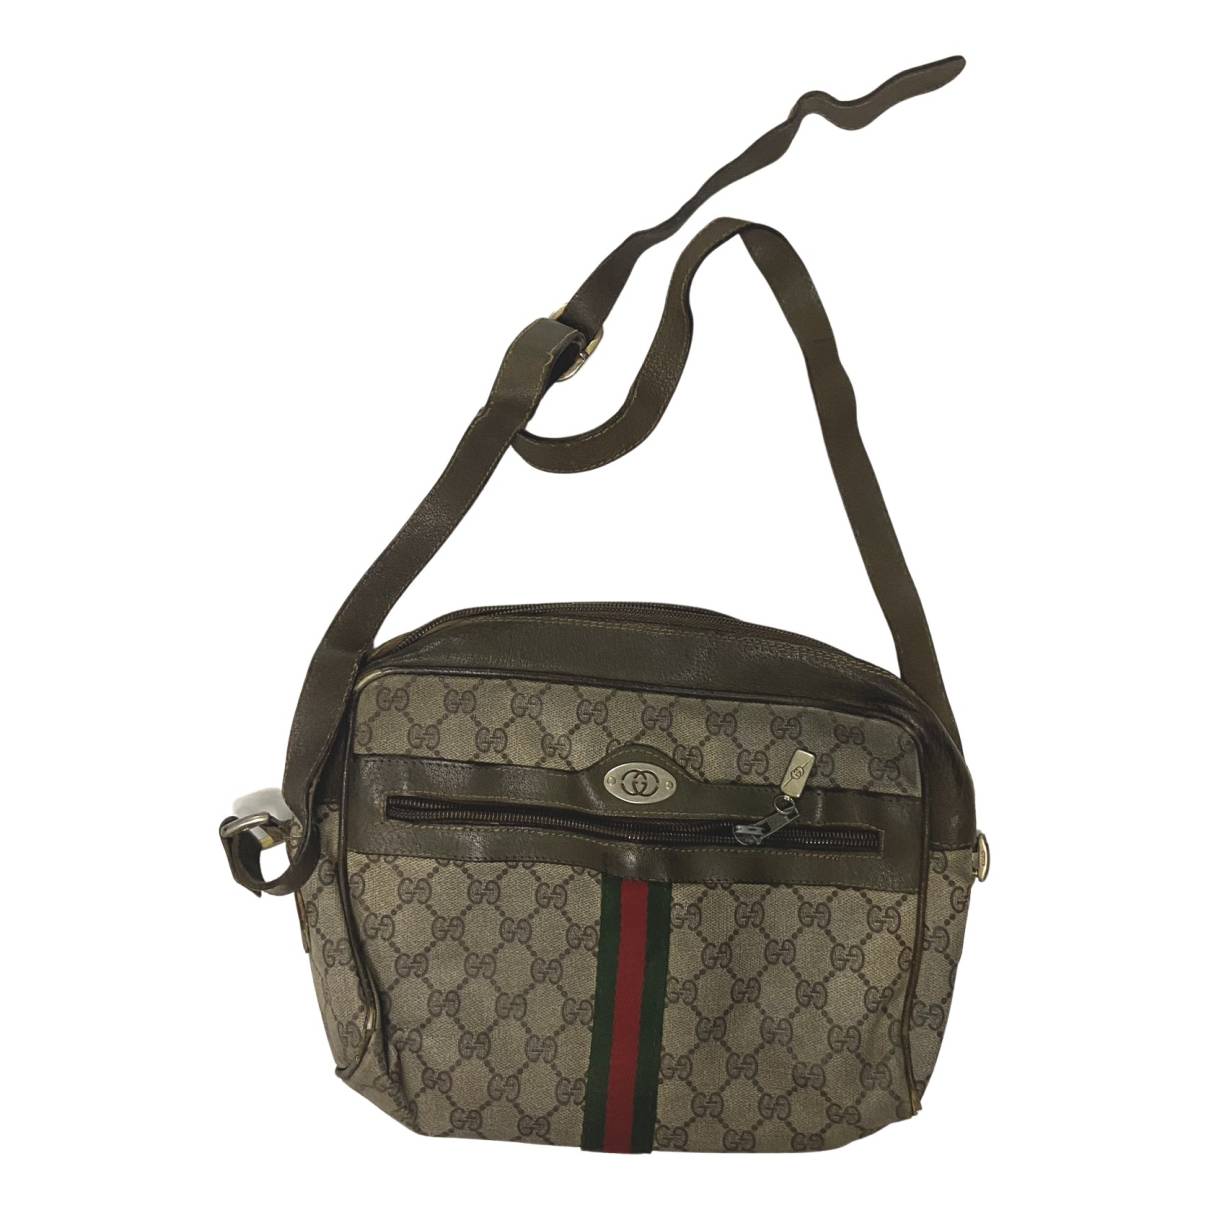 Bree leather handbag Gucci - Vintage